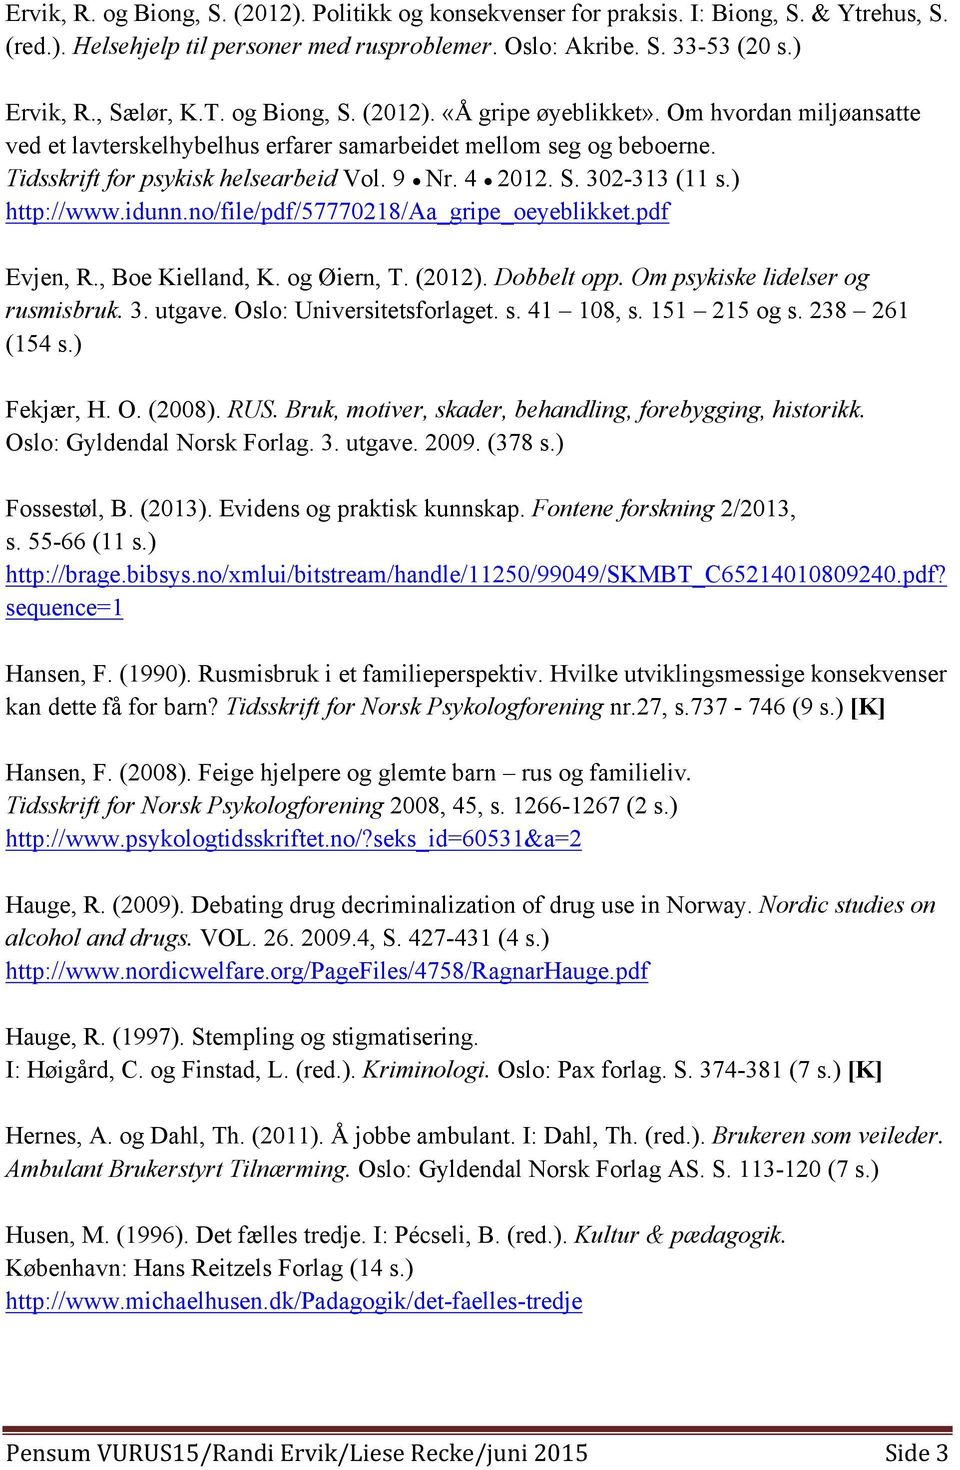 ) http://www.idunn.no/file/pdf/57770218/aa_gripe_oeyeblikket.pdf Evjen, R., Boe Kielland, K. og Øiern, T. (2012). Dobbelt opp. Om psykiske lidelser og rusmisbruk. 3. utgave.